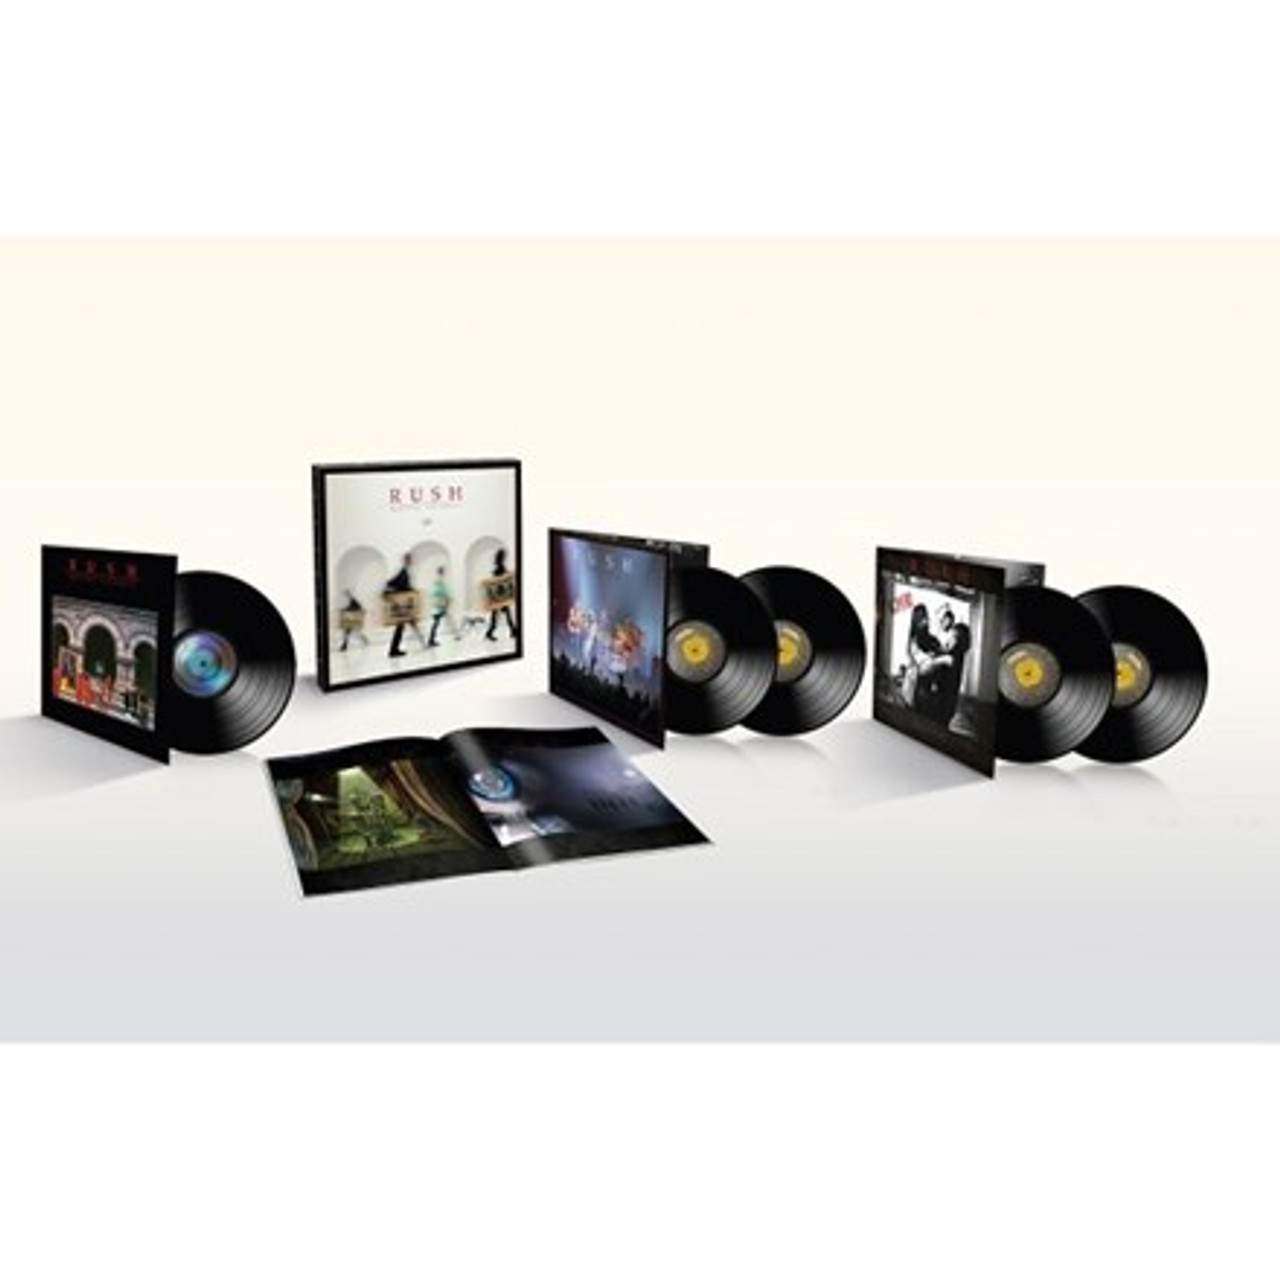 Rush (Remastered): CDs & Vinyl 